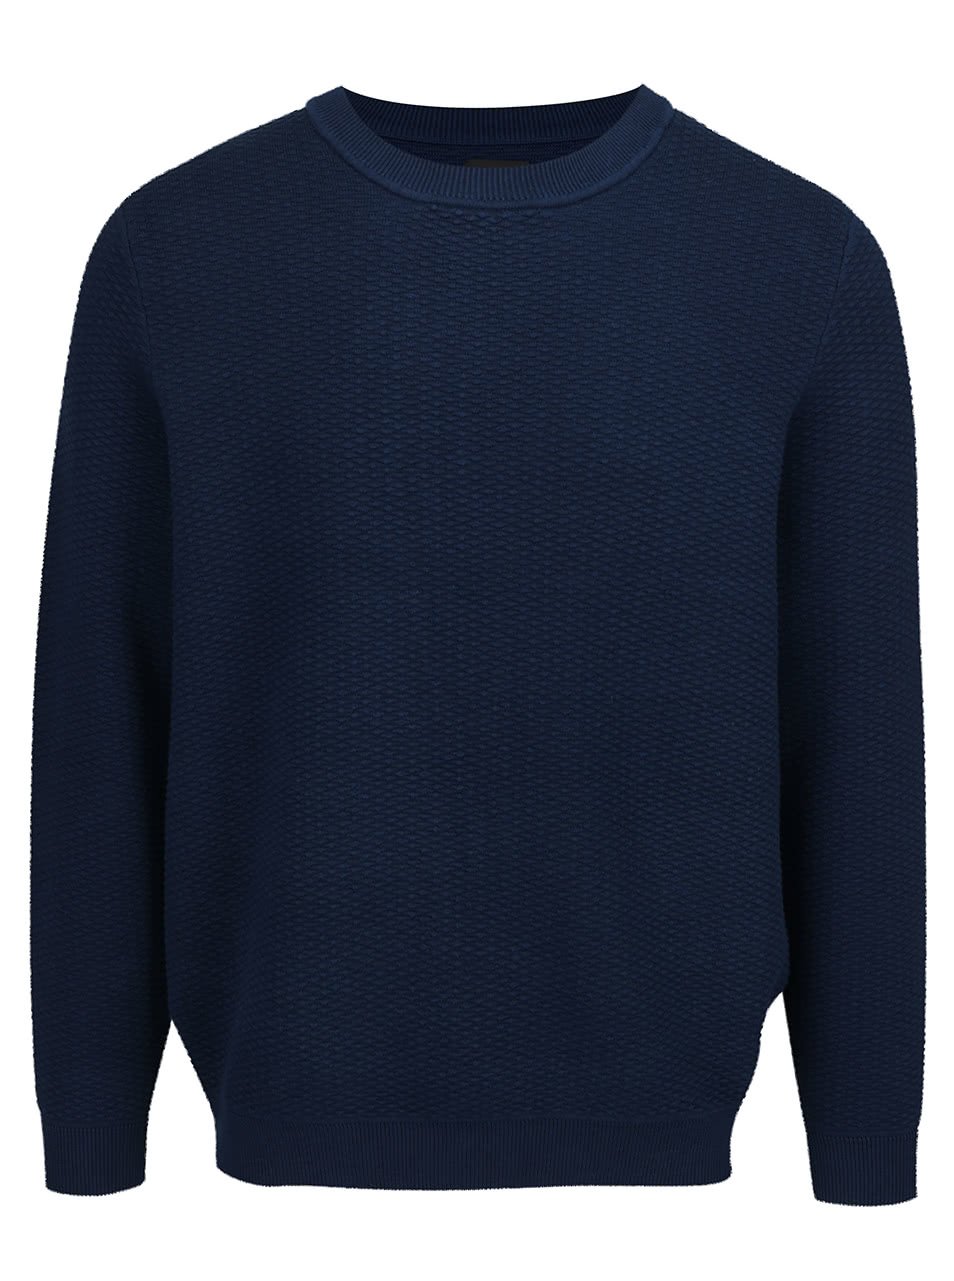 Tmavě modrý strukturovaný svetr Burton Menswear London